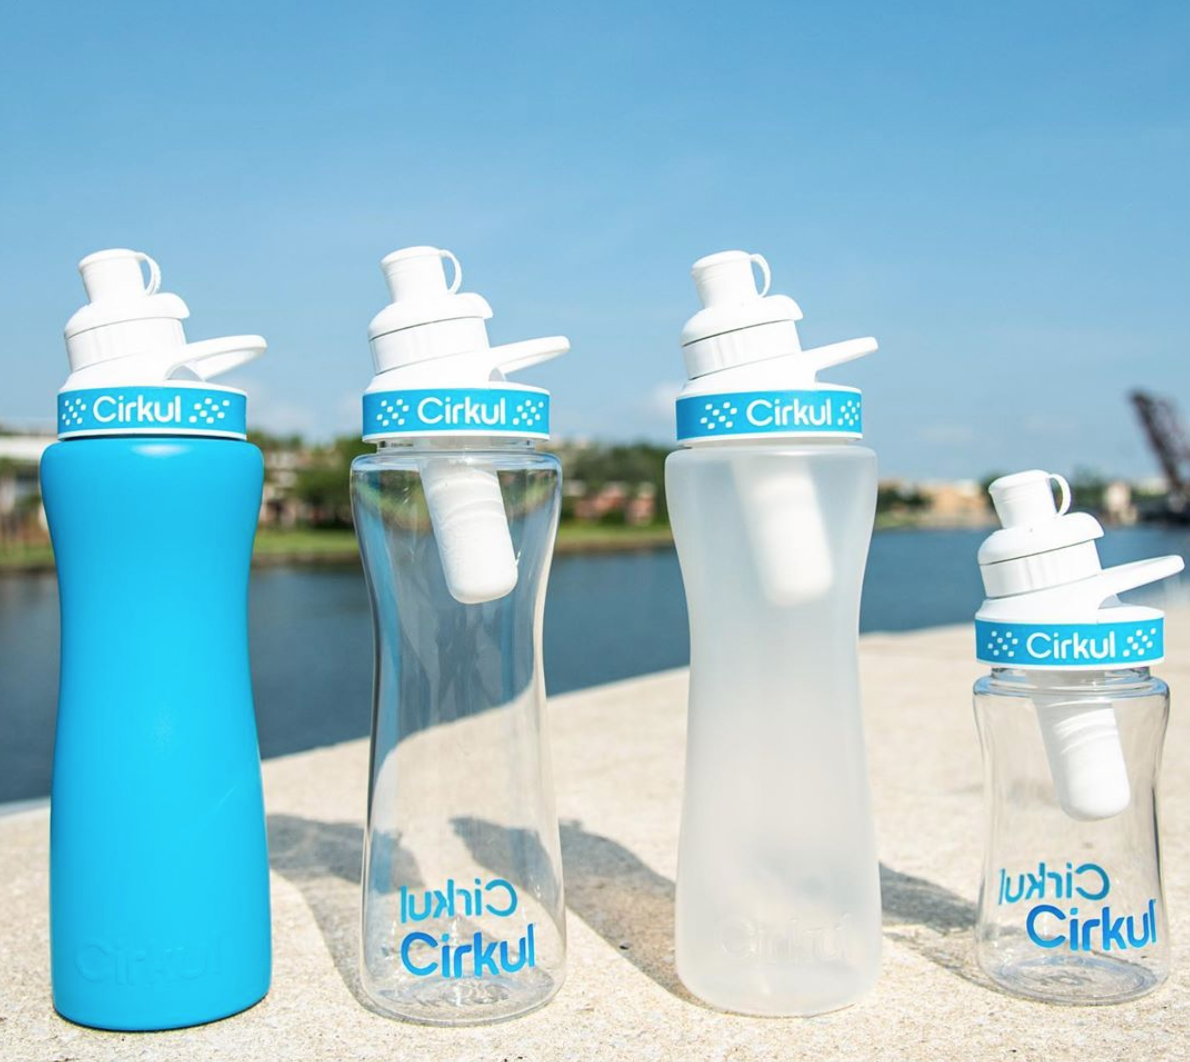 Cirkul water bottles